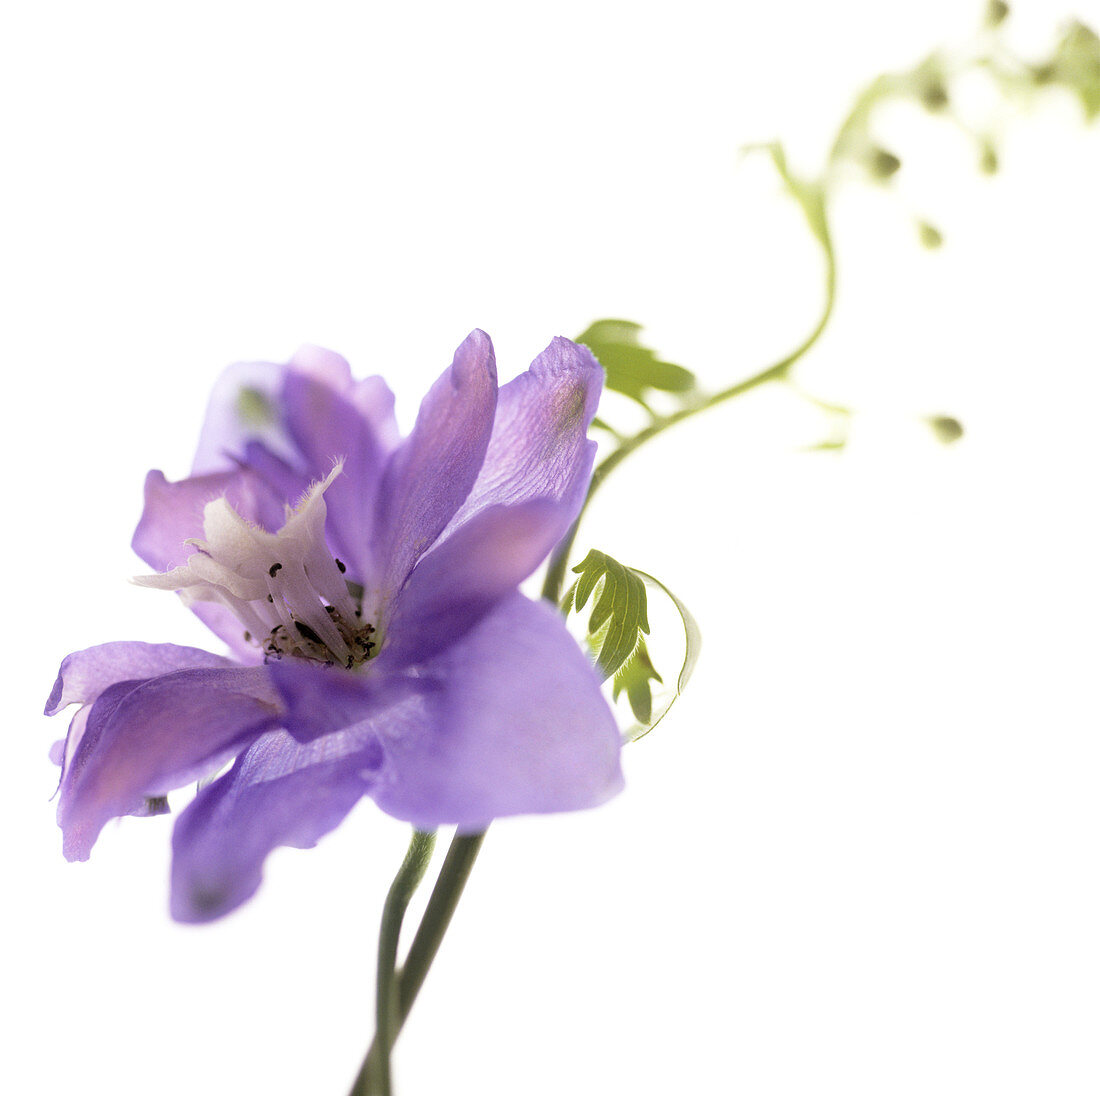 Delphinium flower (Delphinium sp.)